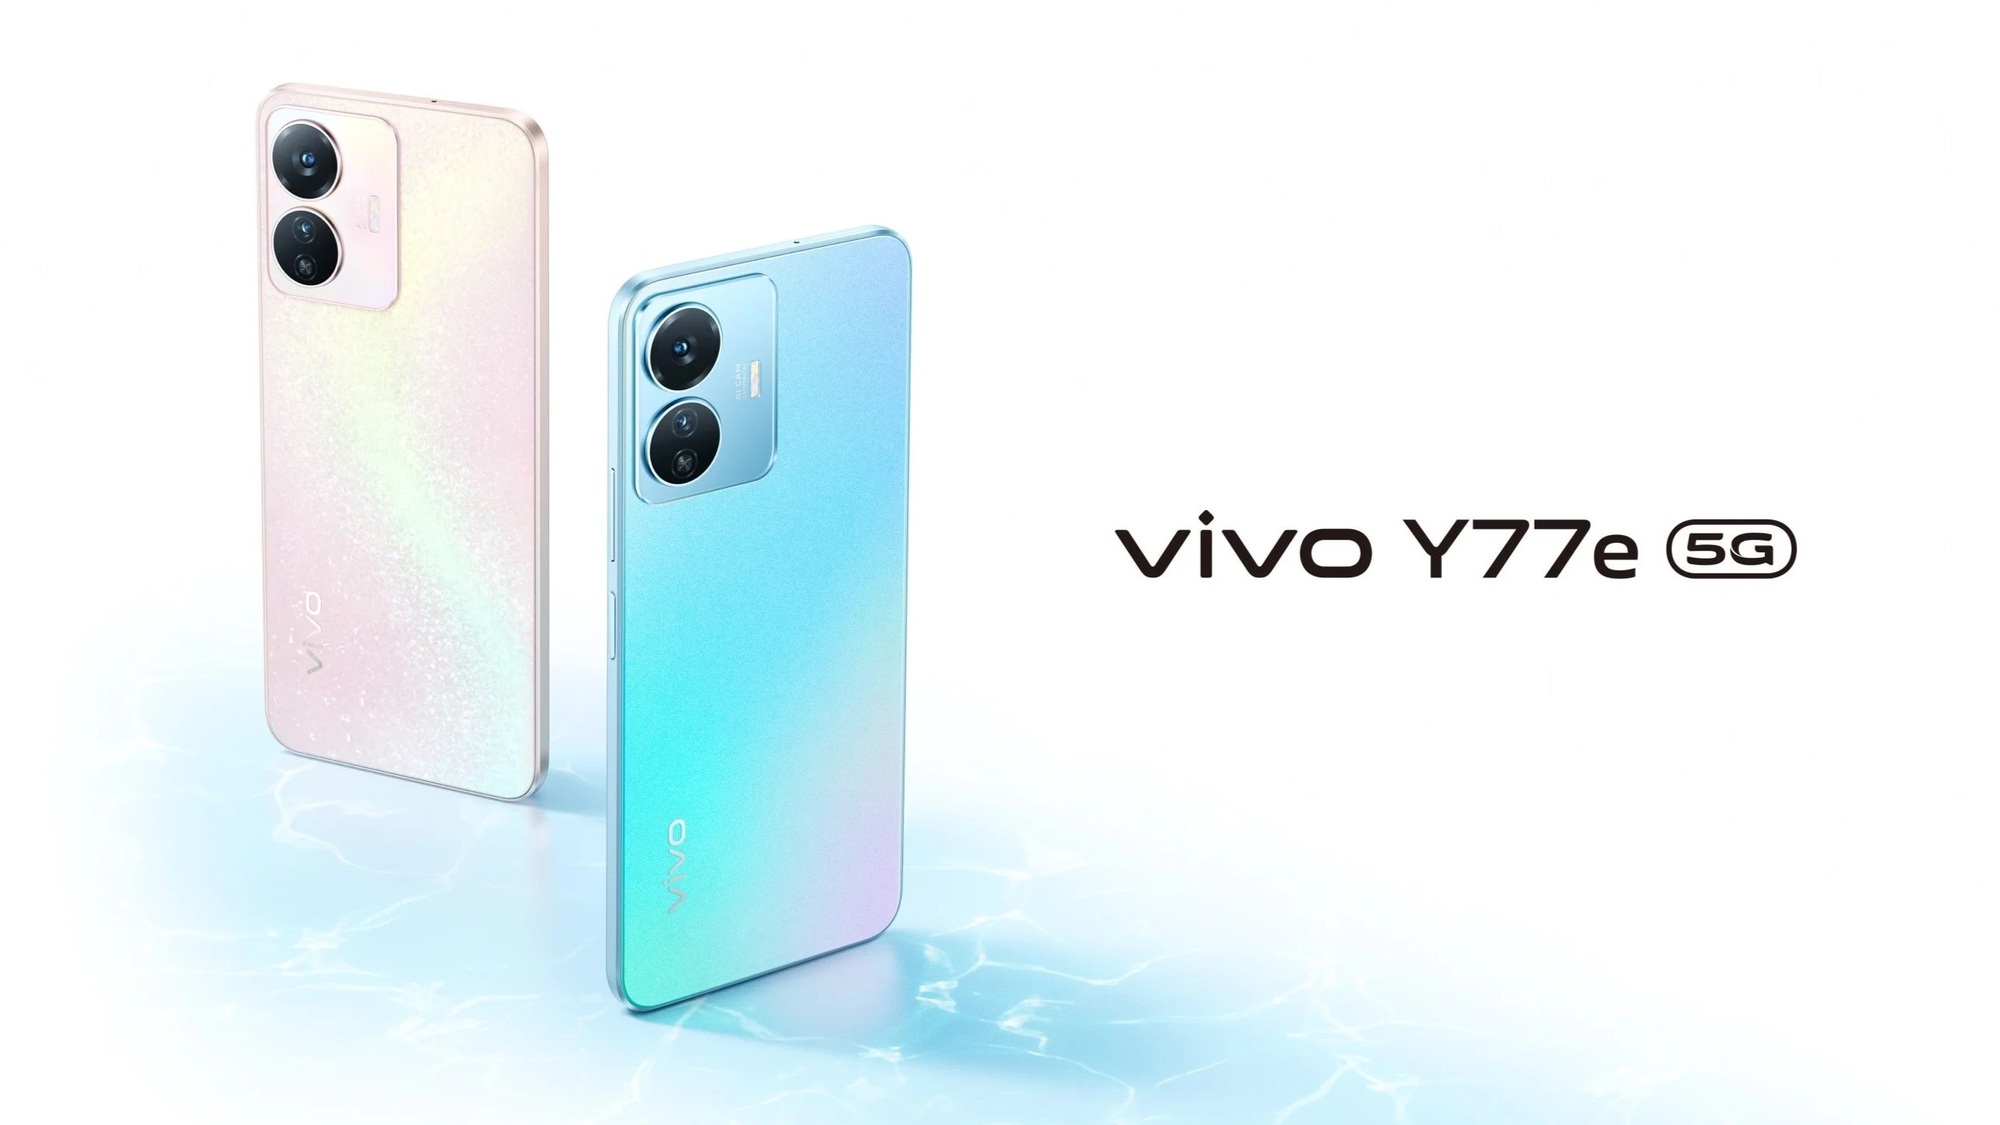 vivo ra mắt điện thoại 5G giá rẻ có màn hình OLED, pin 5000mAh - ảnh 1